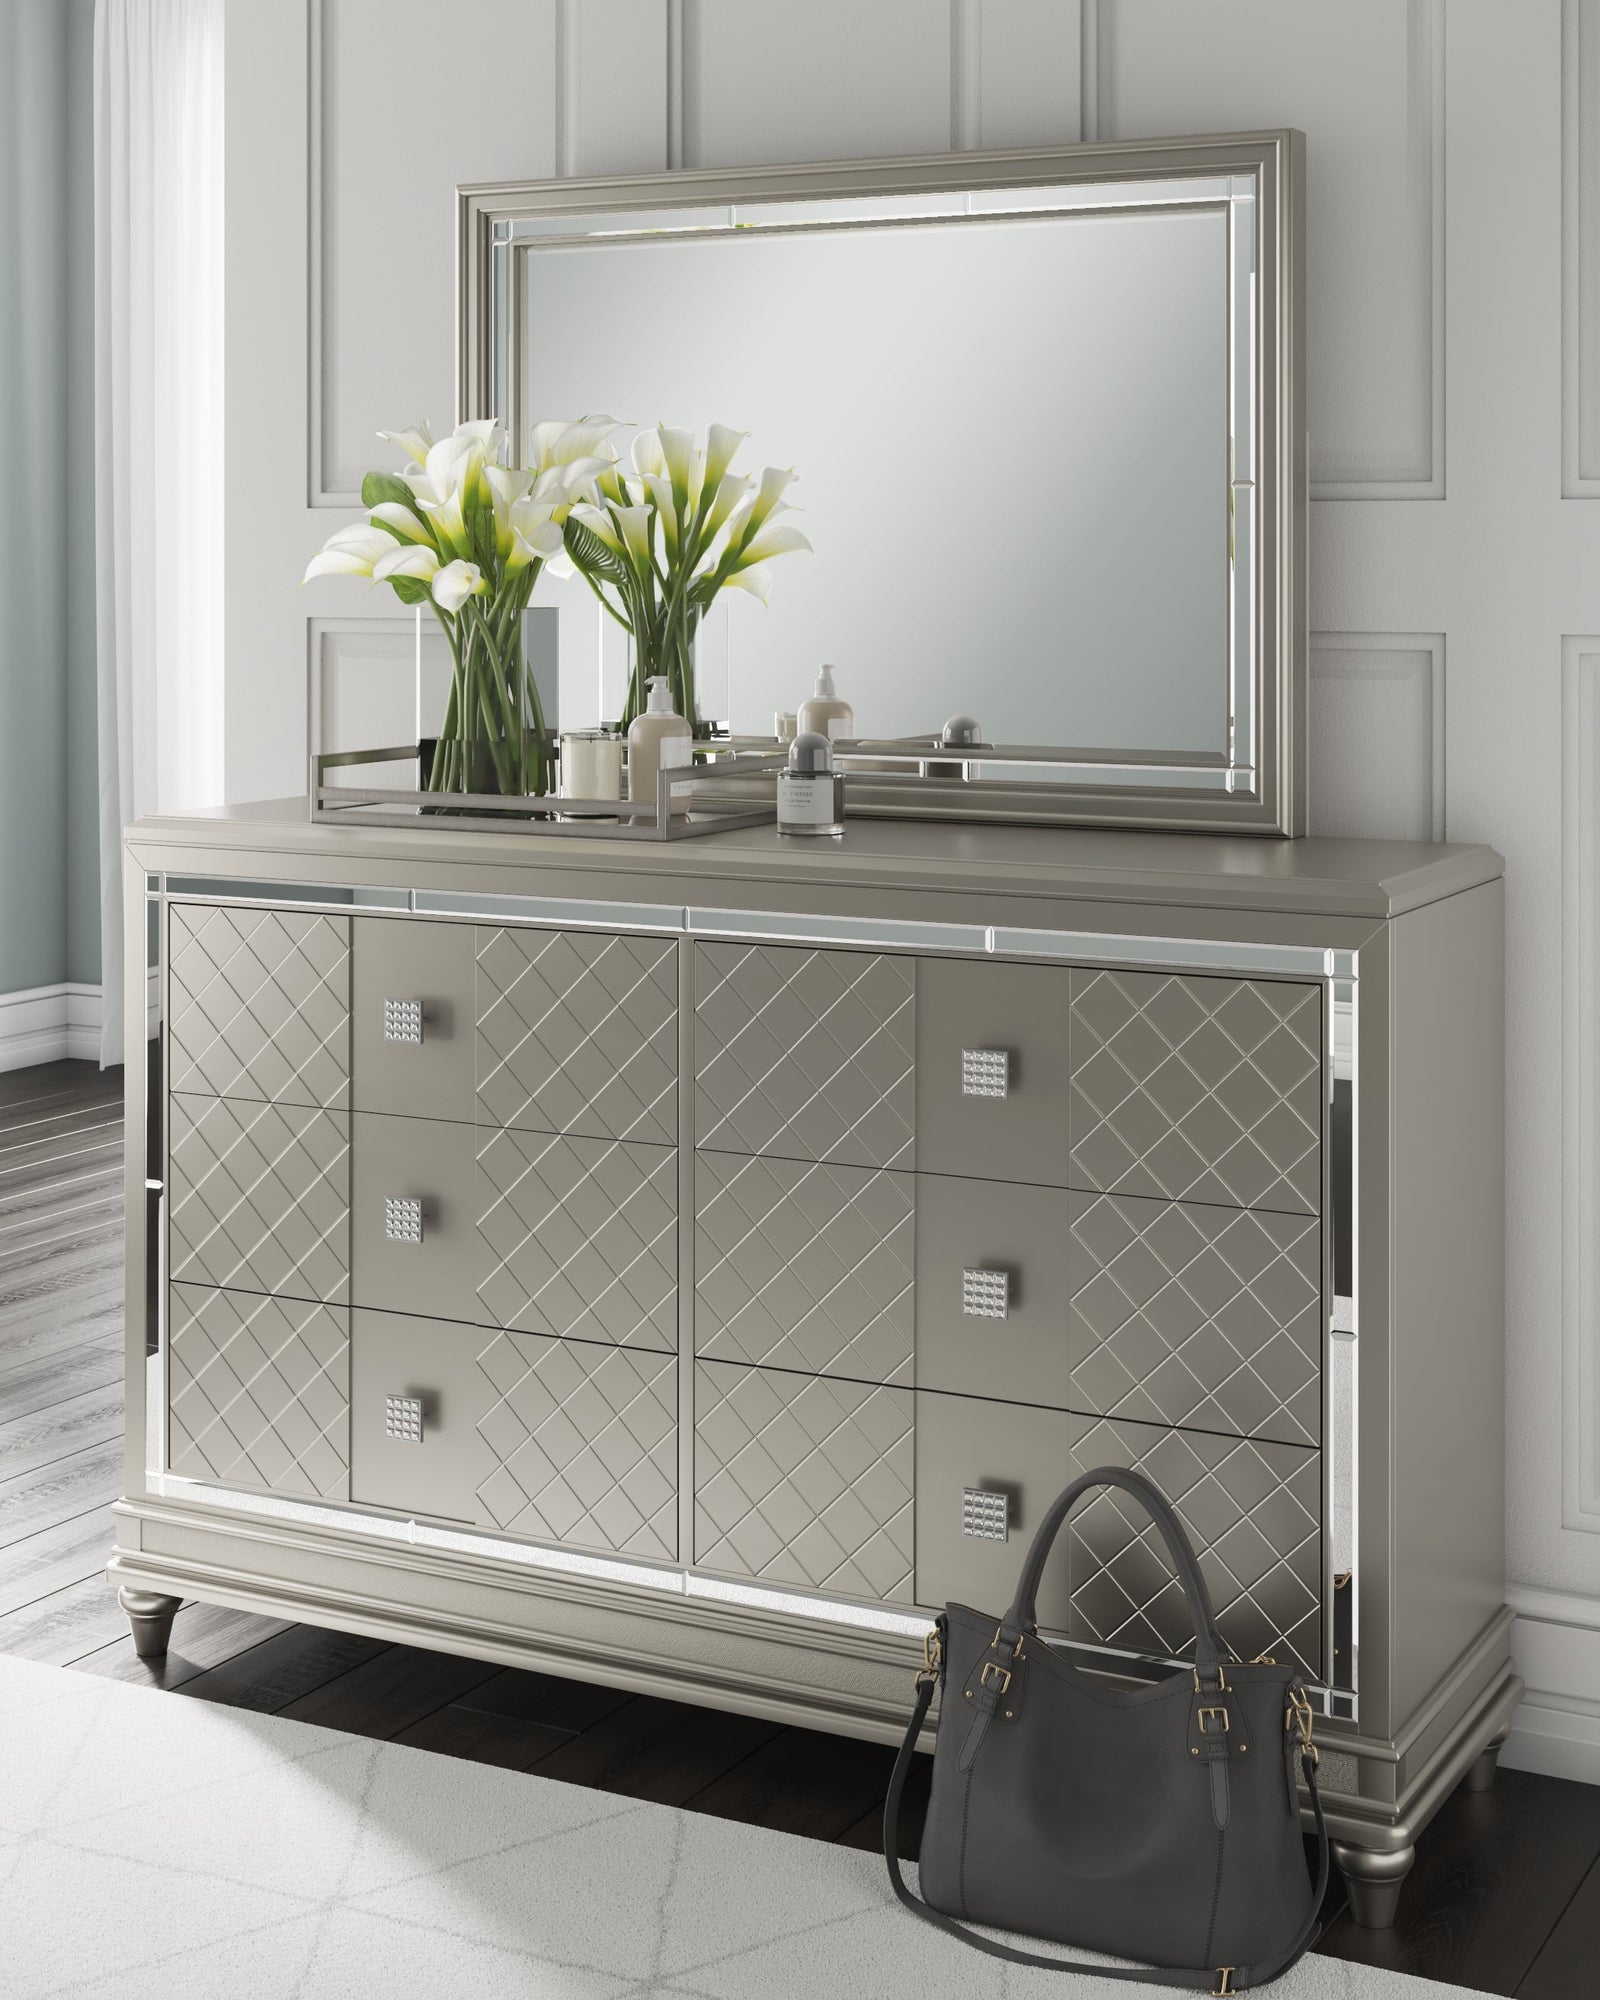 Chevanna Platinum Dresser And Mirror